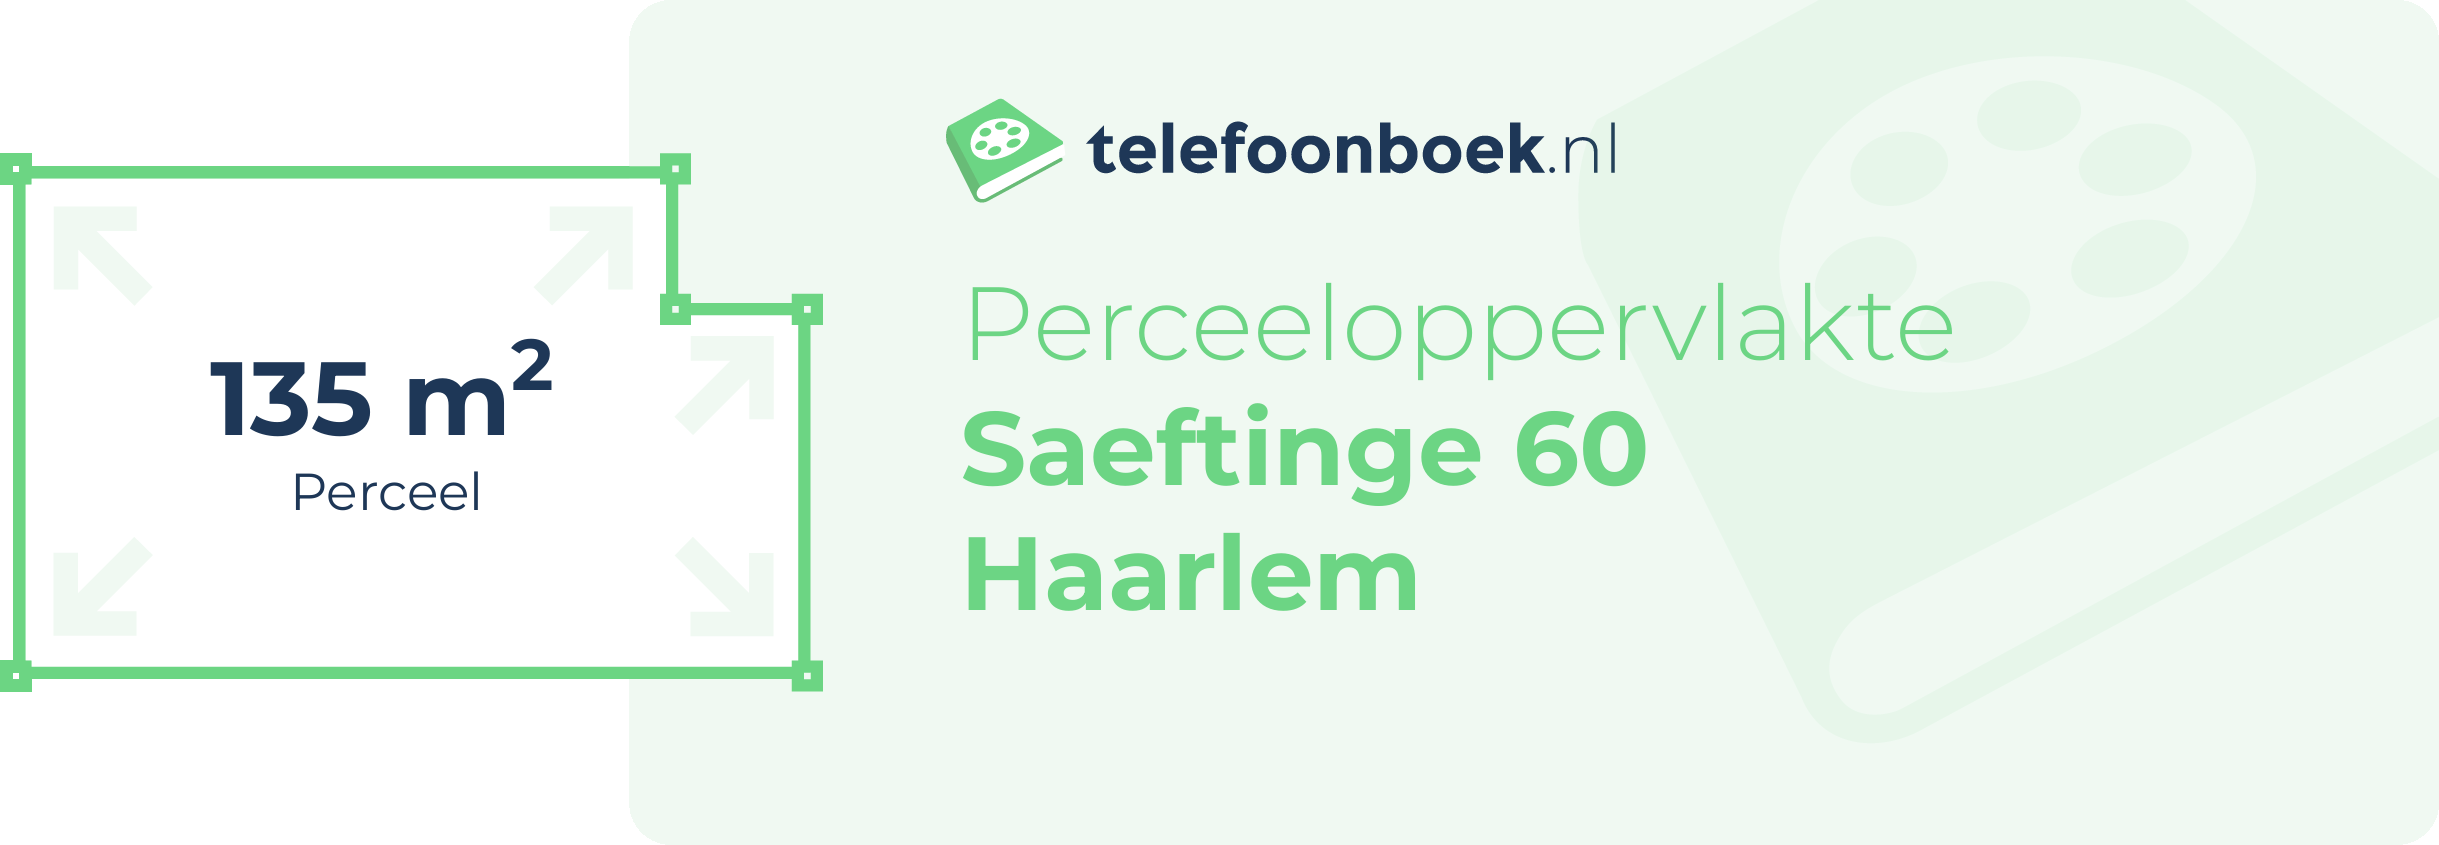 Perceeloppervlakte Saeftinge 60 Haarlem